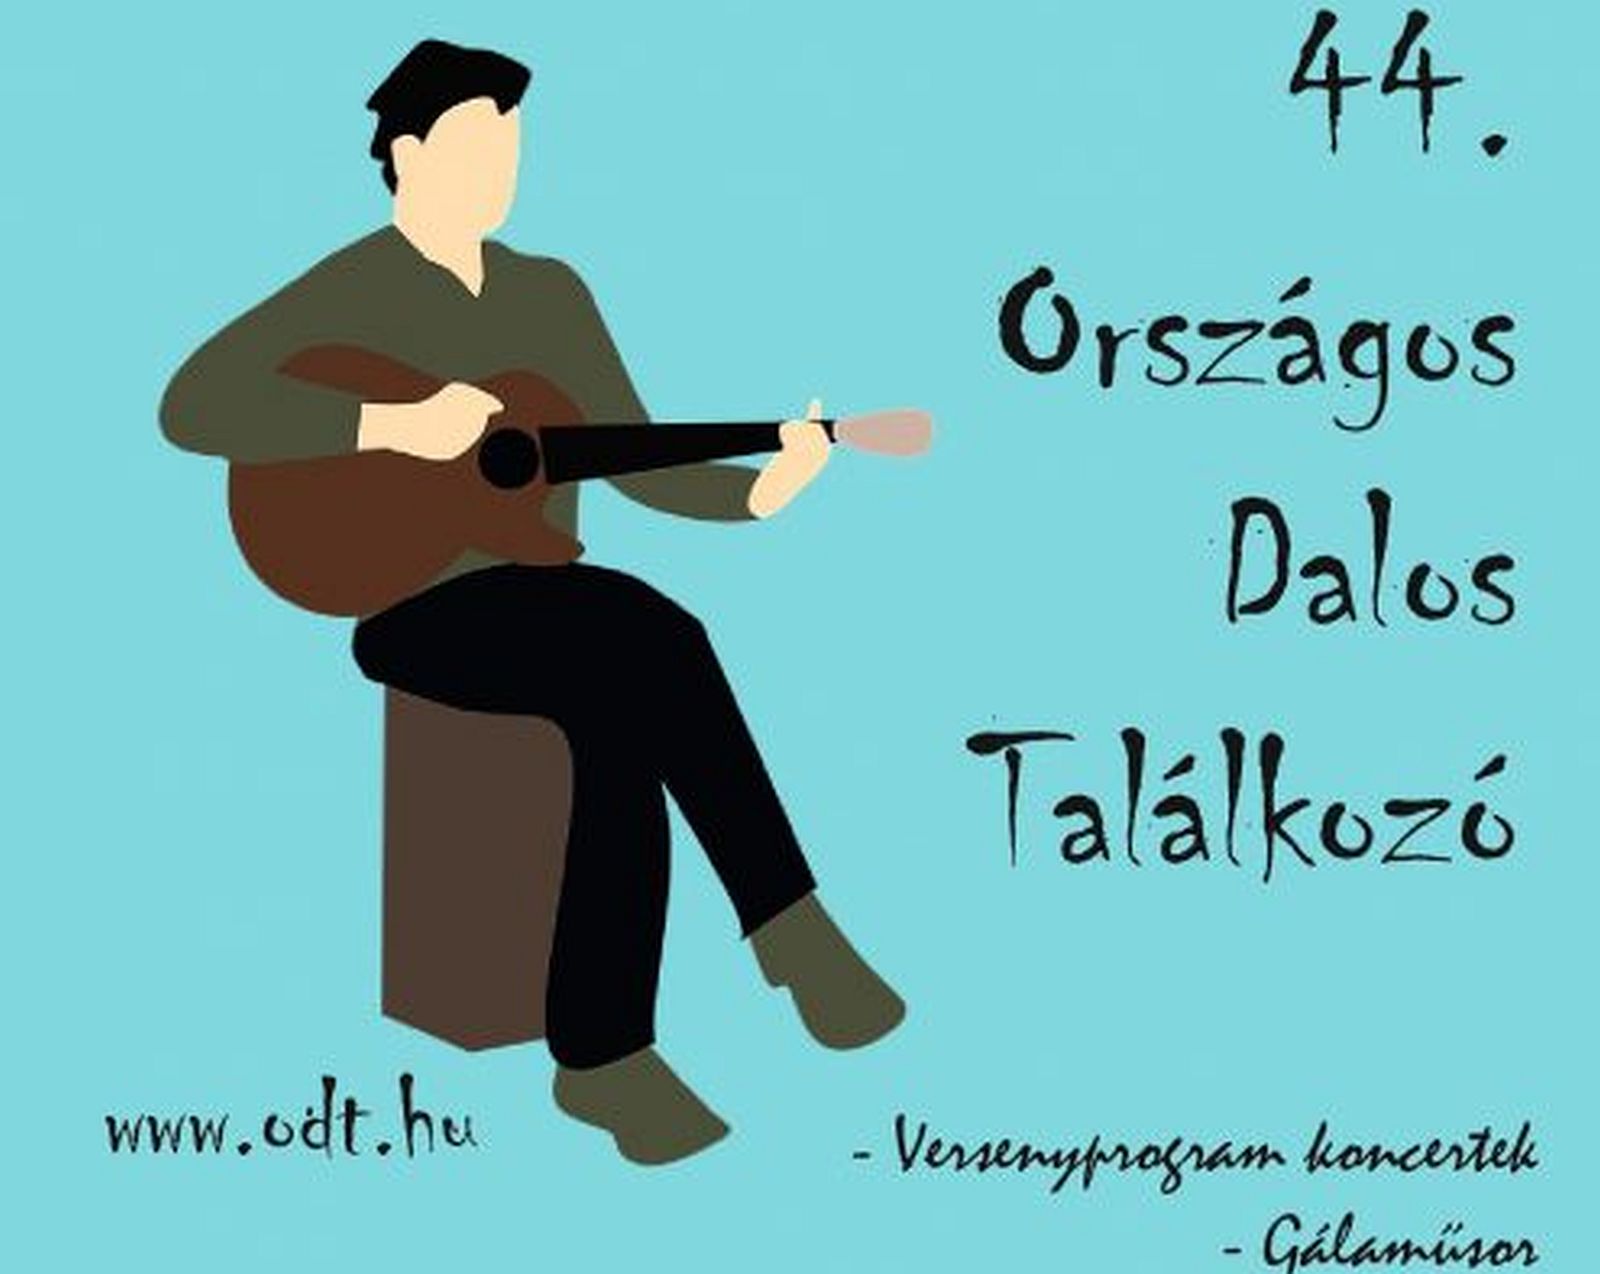 Az ország legjobb dalnokai találkoznak Fehérváron a hétvégén